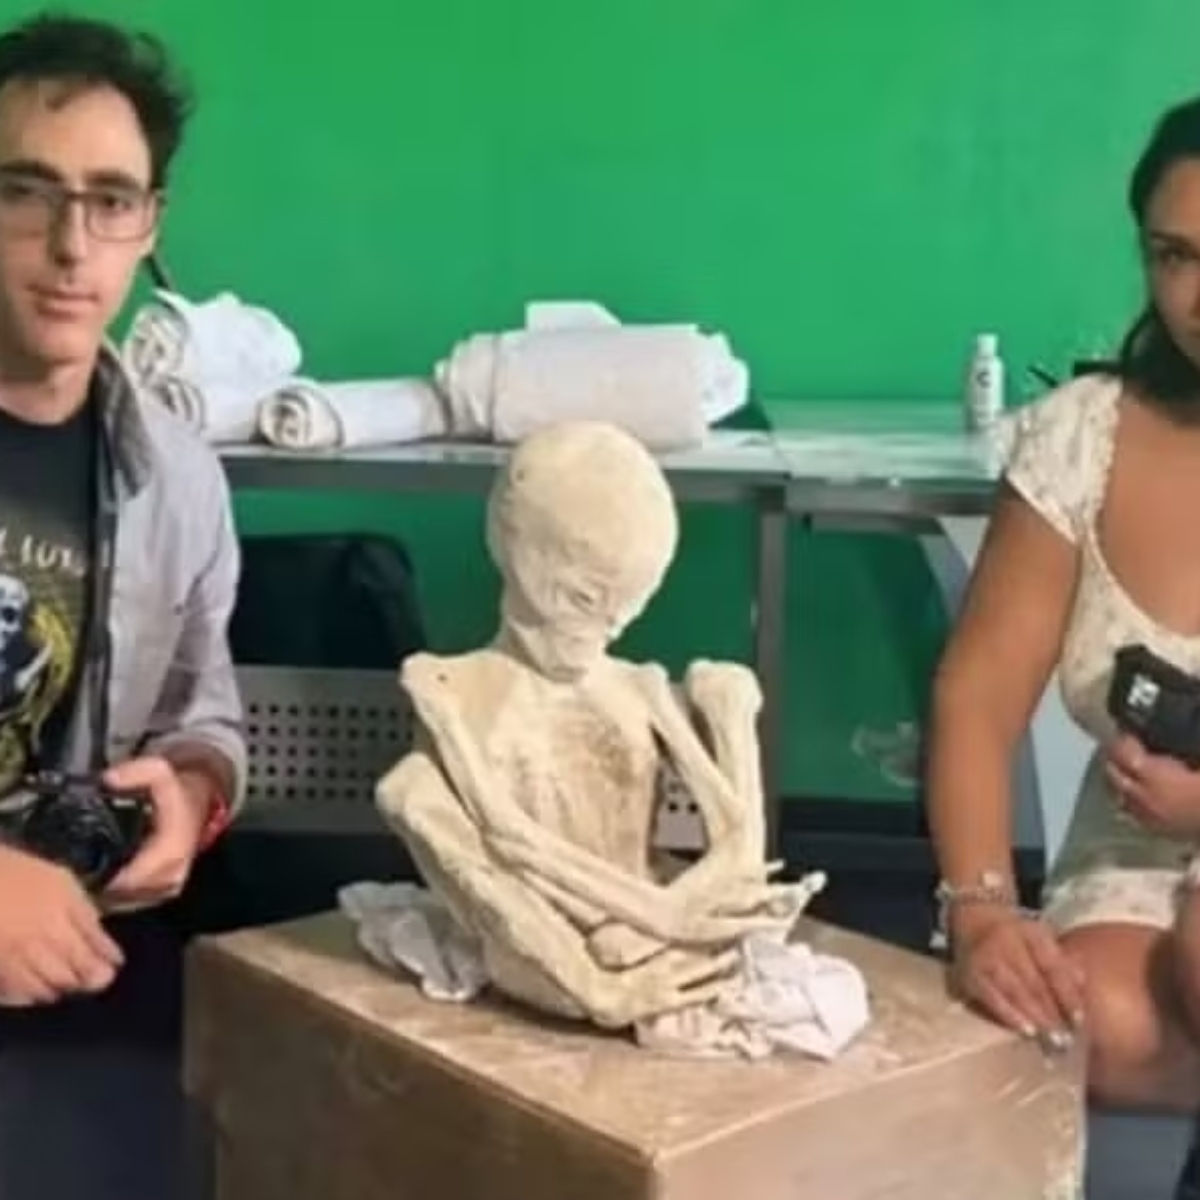  “Múmias alienígena” são encontradas no Peru, dizem cineastas 